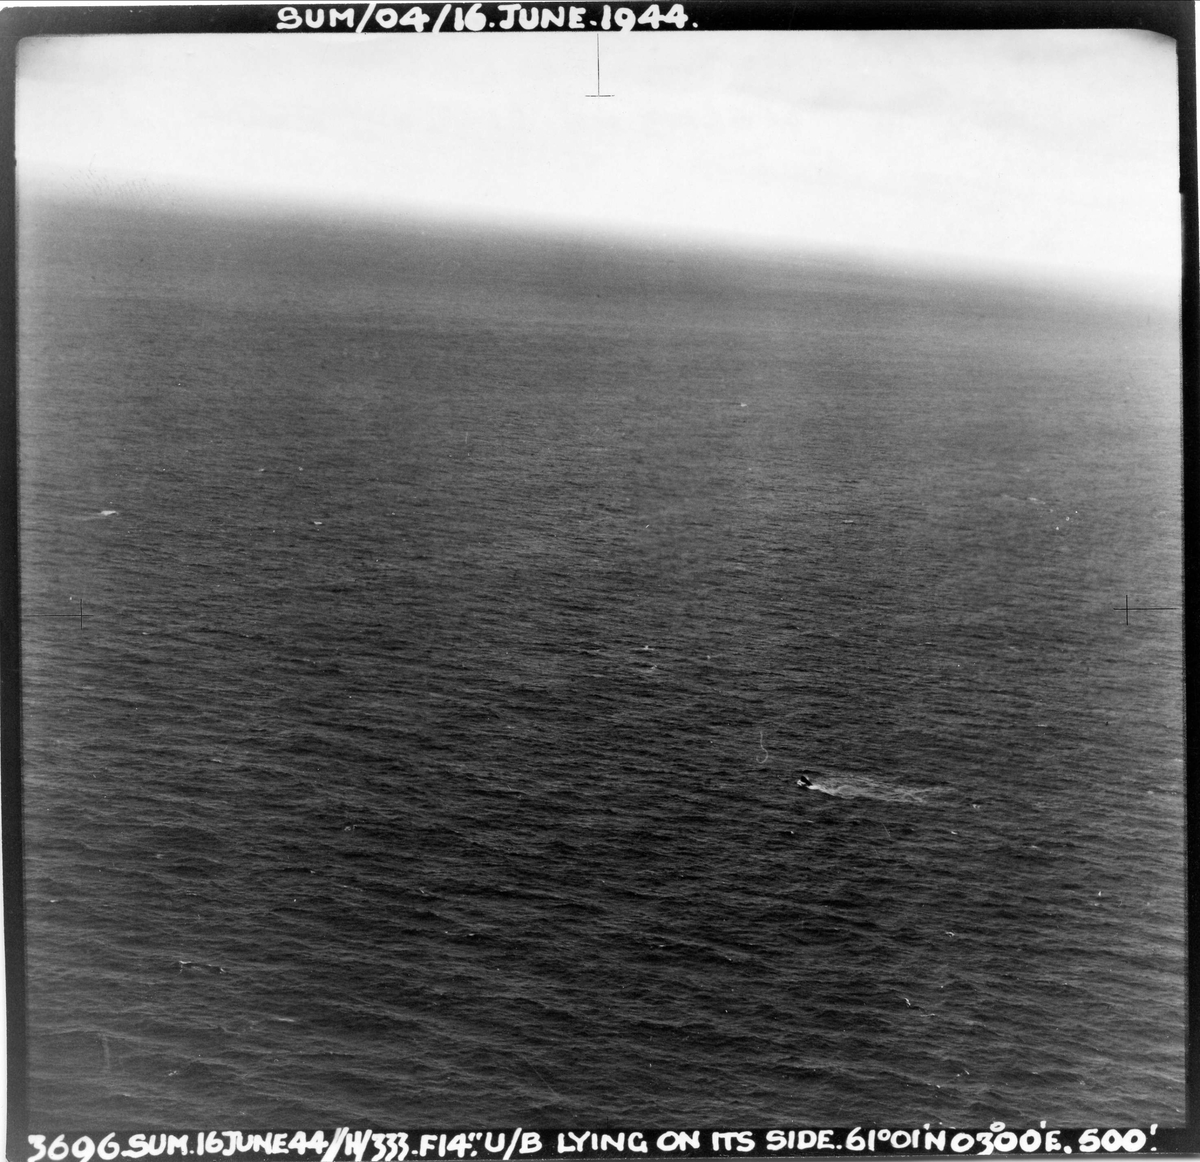 En Mosquito fra 333 skvadronen angriper en tysk ubåt vest for Sognefjorden, 16. juni 1944. Pilot på flyet er major E.U. Johansen.